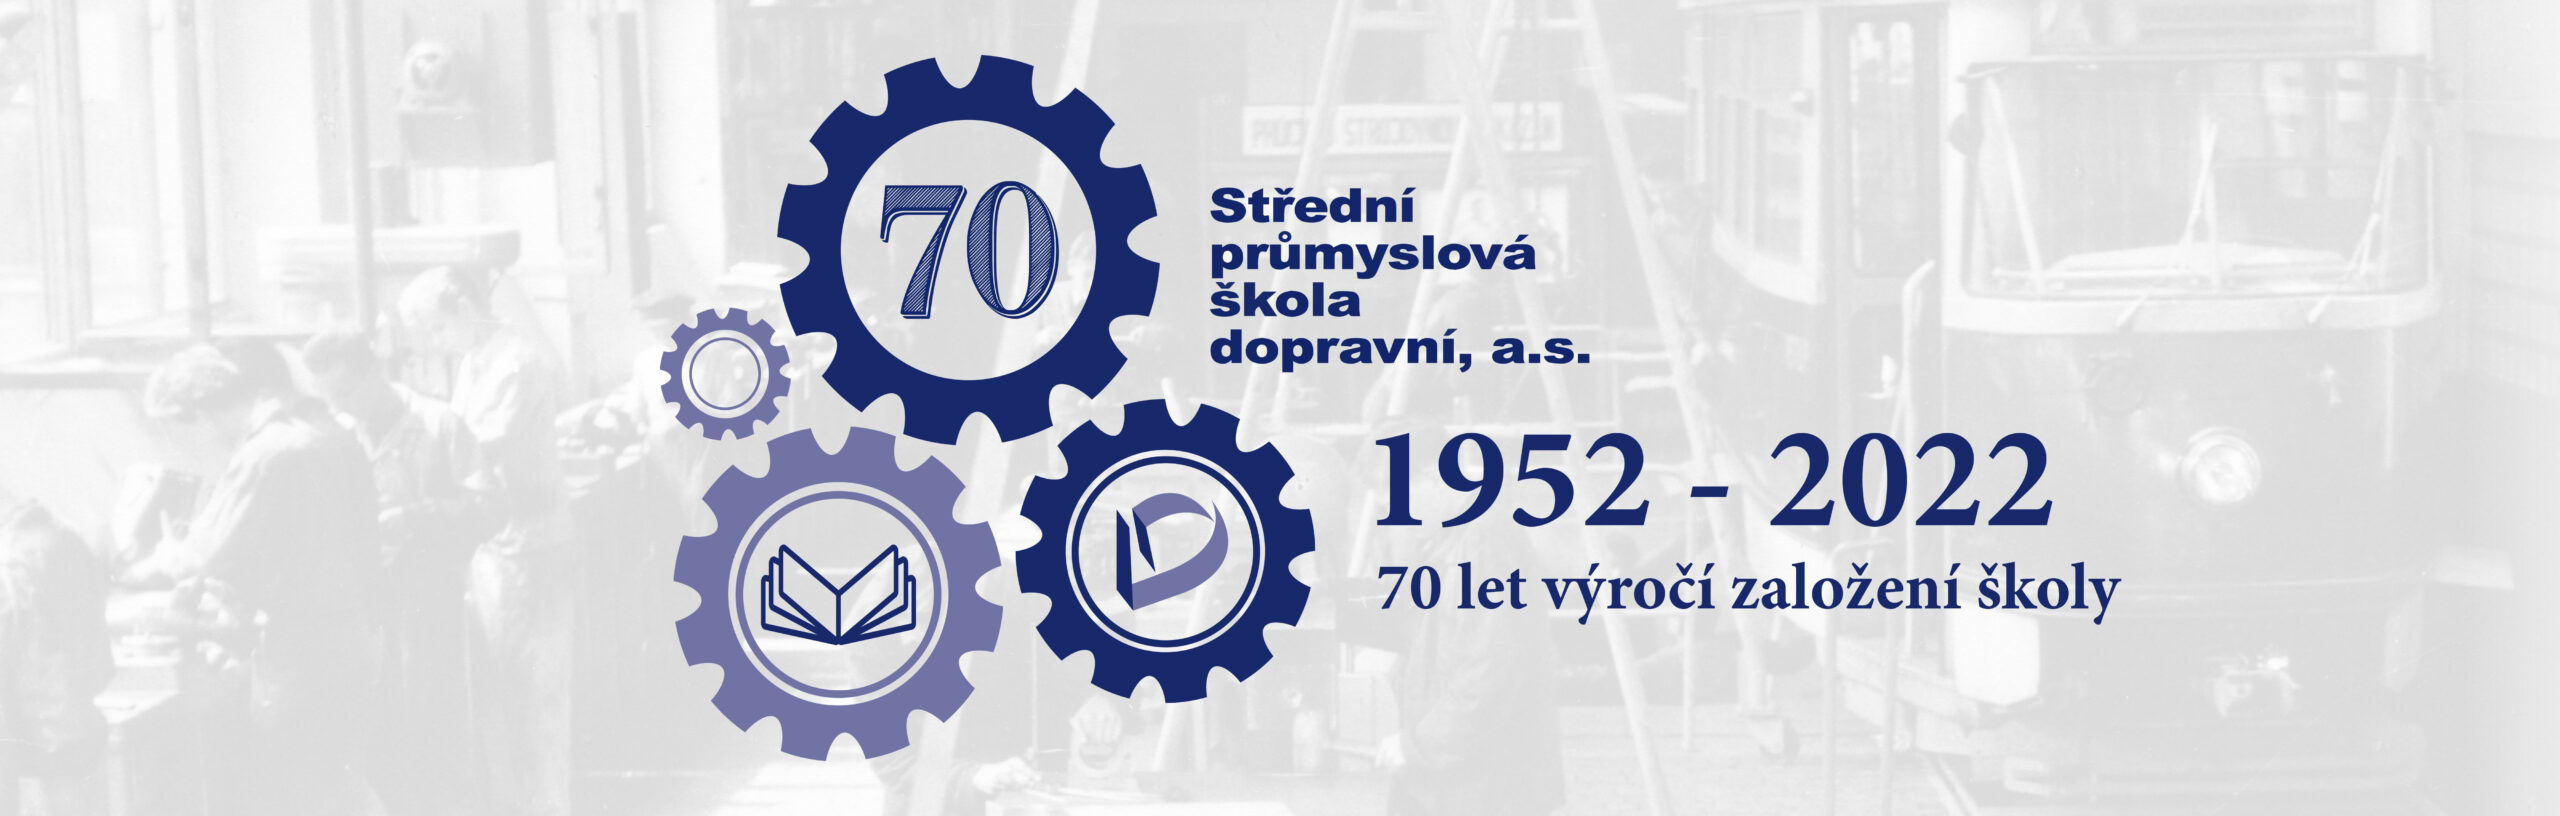 70 let výročí založení školy